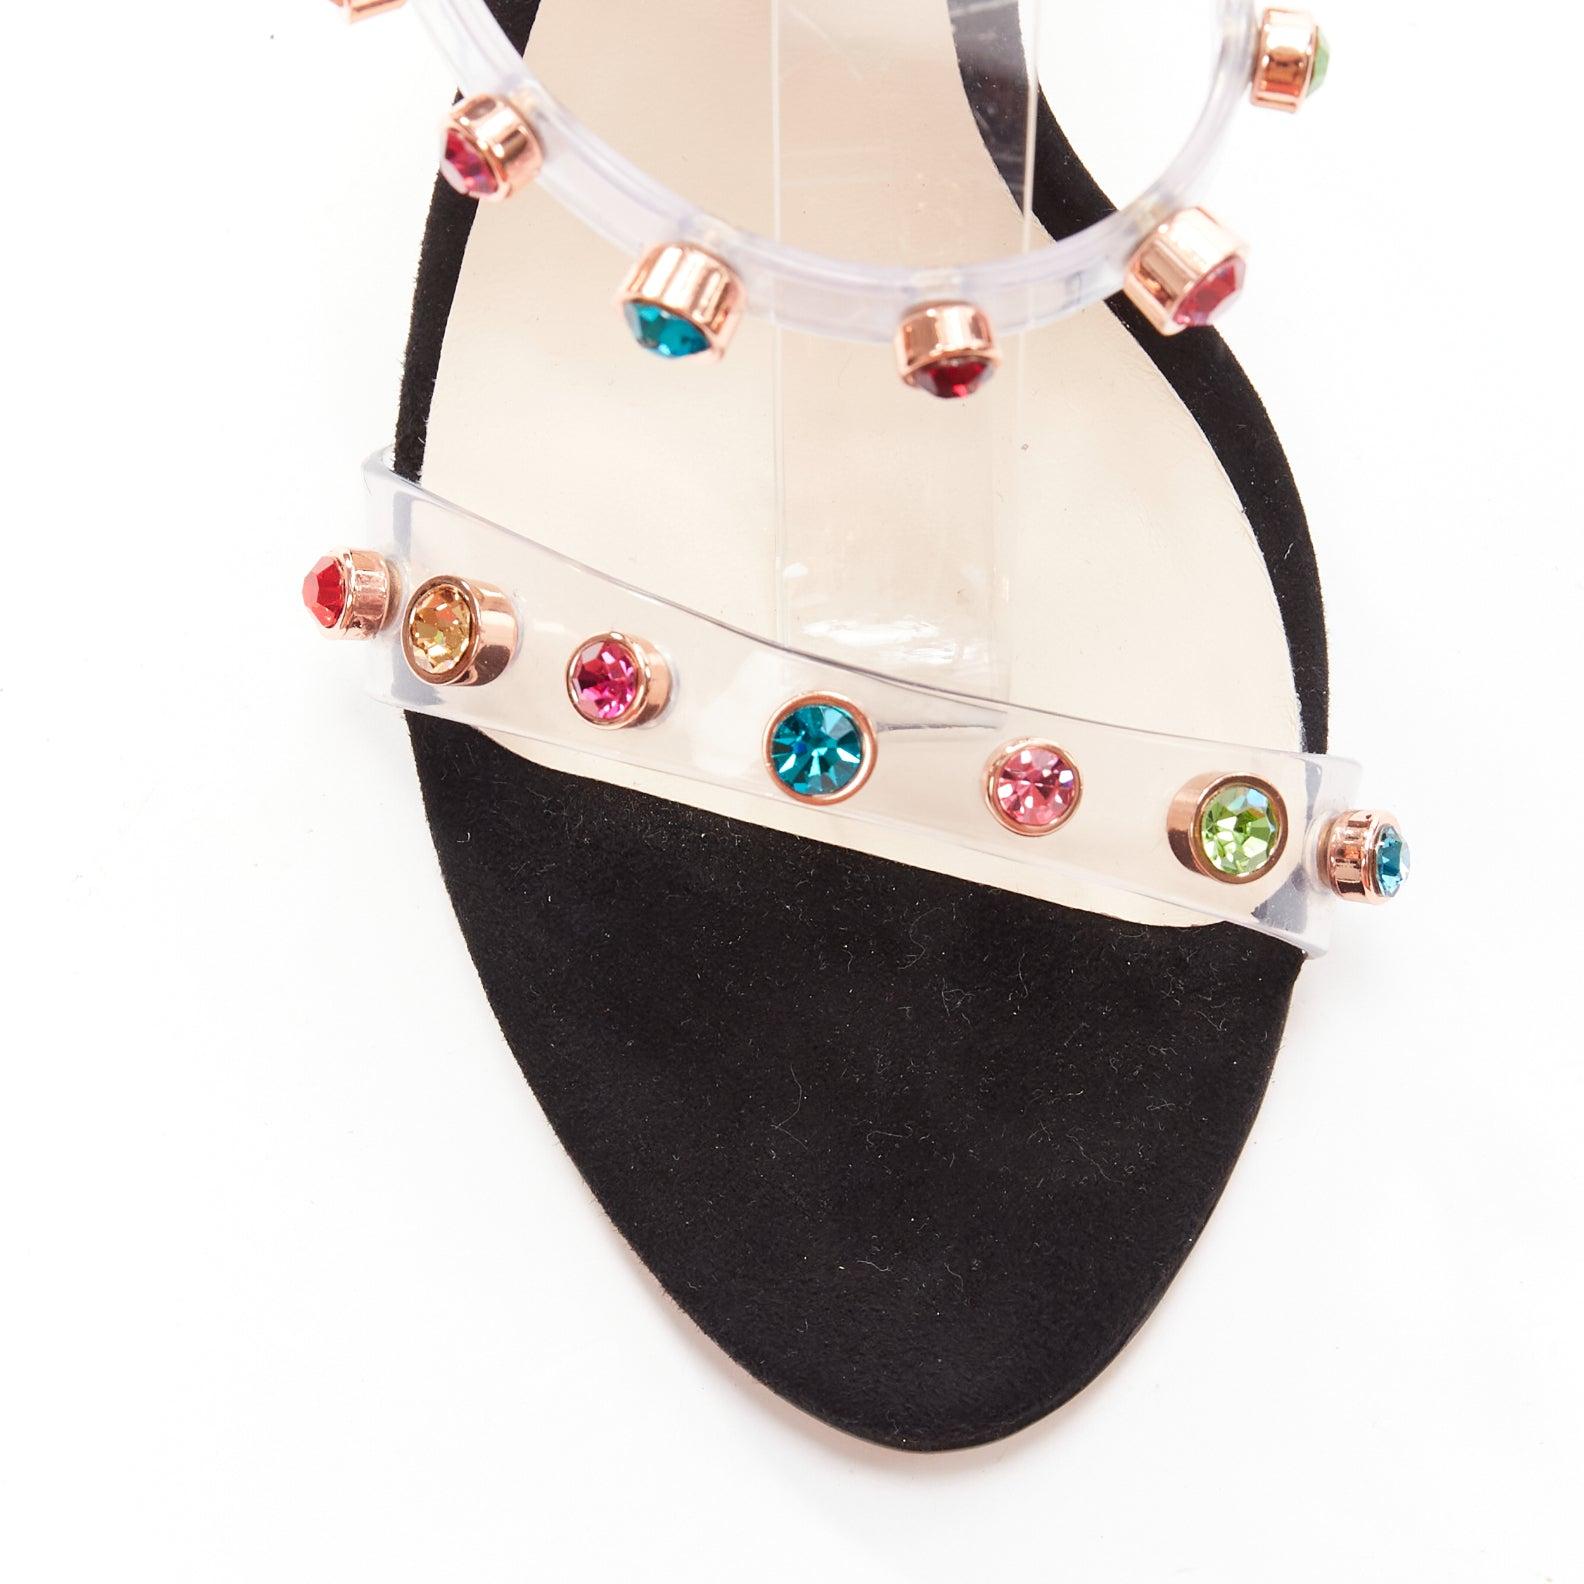 SOPHIA WEBSTER Rosalind 100 multicolor gem crystal PVC strappy heels EU38.5 For Sale 1